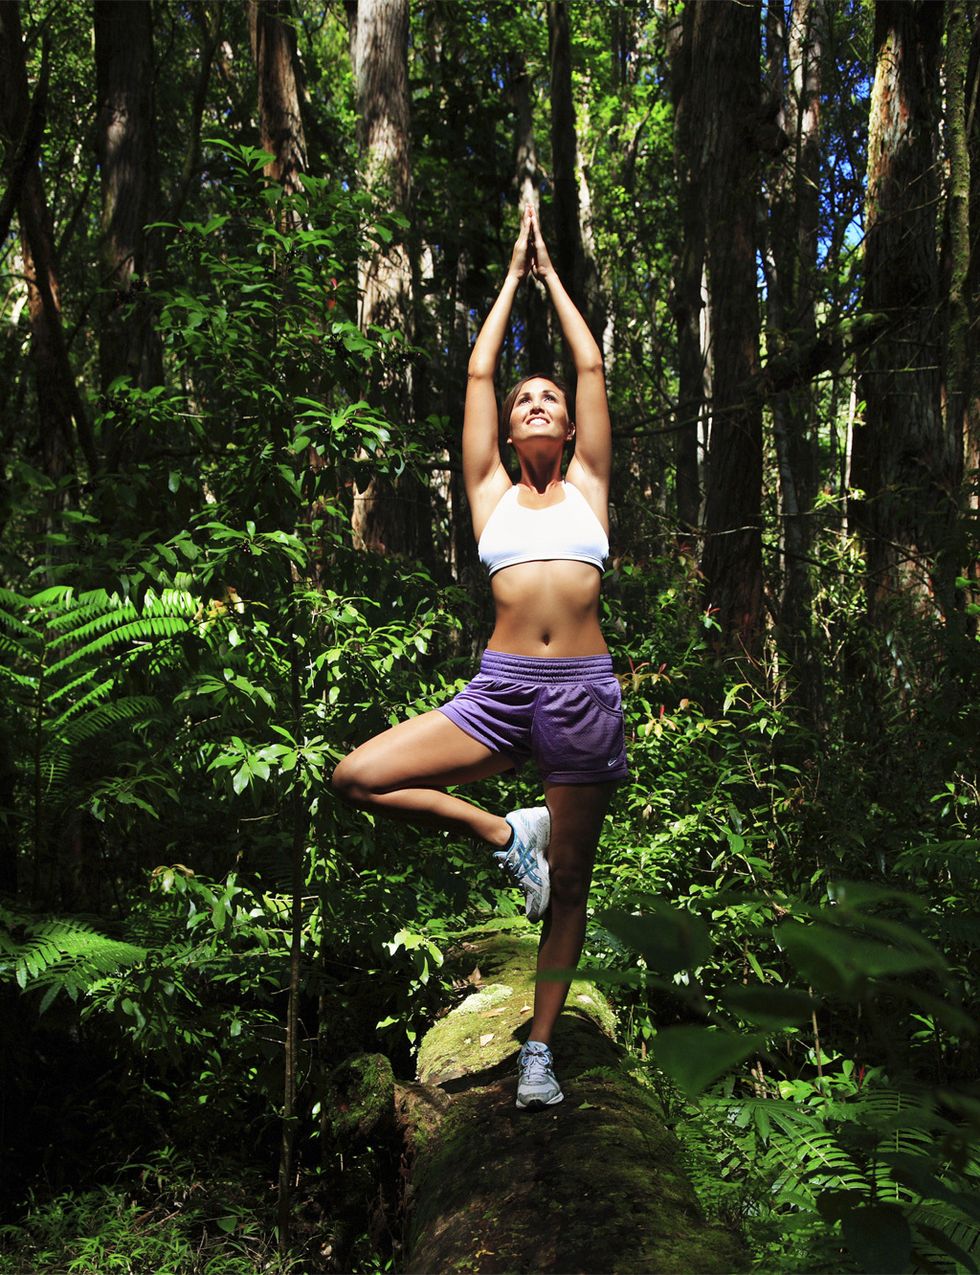 <p>Clave en el running, <strong>la respiración es también es el pilar del yoga, la conexión entre cuerpo y mente</strong> y una potente herramienta que permite que te ayudará a calmarte, a oxigenar cada célula de tu cuerpo y a aumentar tu tono vital. En yoga se realizan diferentes prácticas respiratorias (pranayamas), <strong>desde respiraciones intercostales hasta la potente respiración Ujjayi o de los océanos</strong>. La respiración yogui, consciente y natural, mejora la capacidad respiratoria y te proporcionará control mental en el running. Prueba. Para hacer la respiración Ujjayi respira sólo por la nariz y, al exhalar, <strong>cierra suavemente la garganta imitando el sonido de las olas del mar</strong>.&nbsp;</p><p>&nbsp;</p>